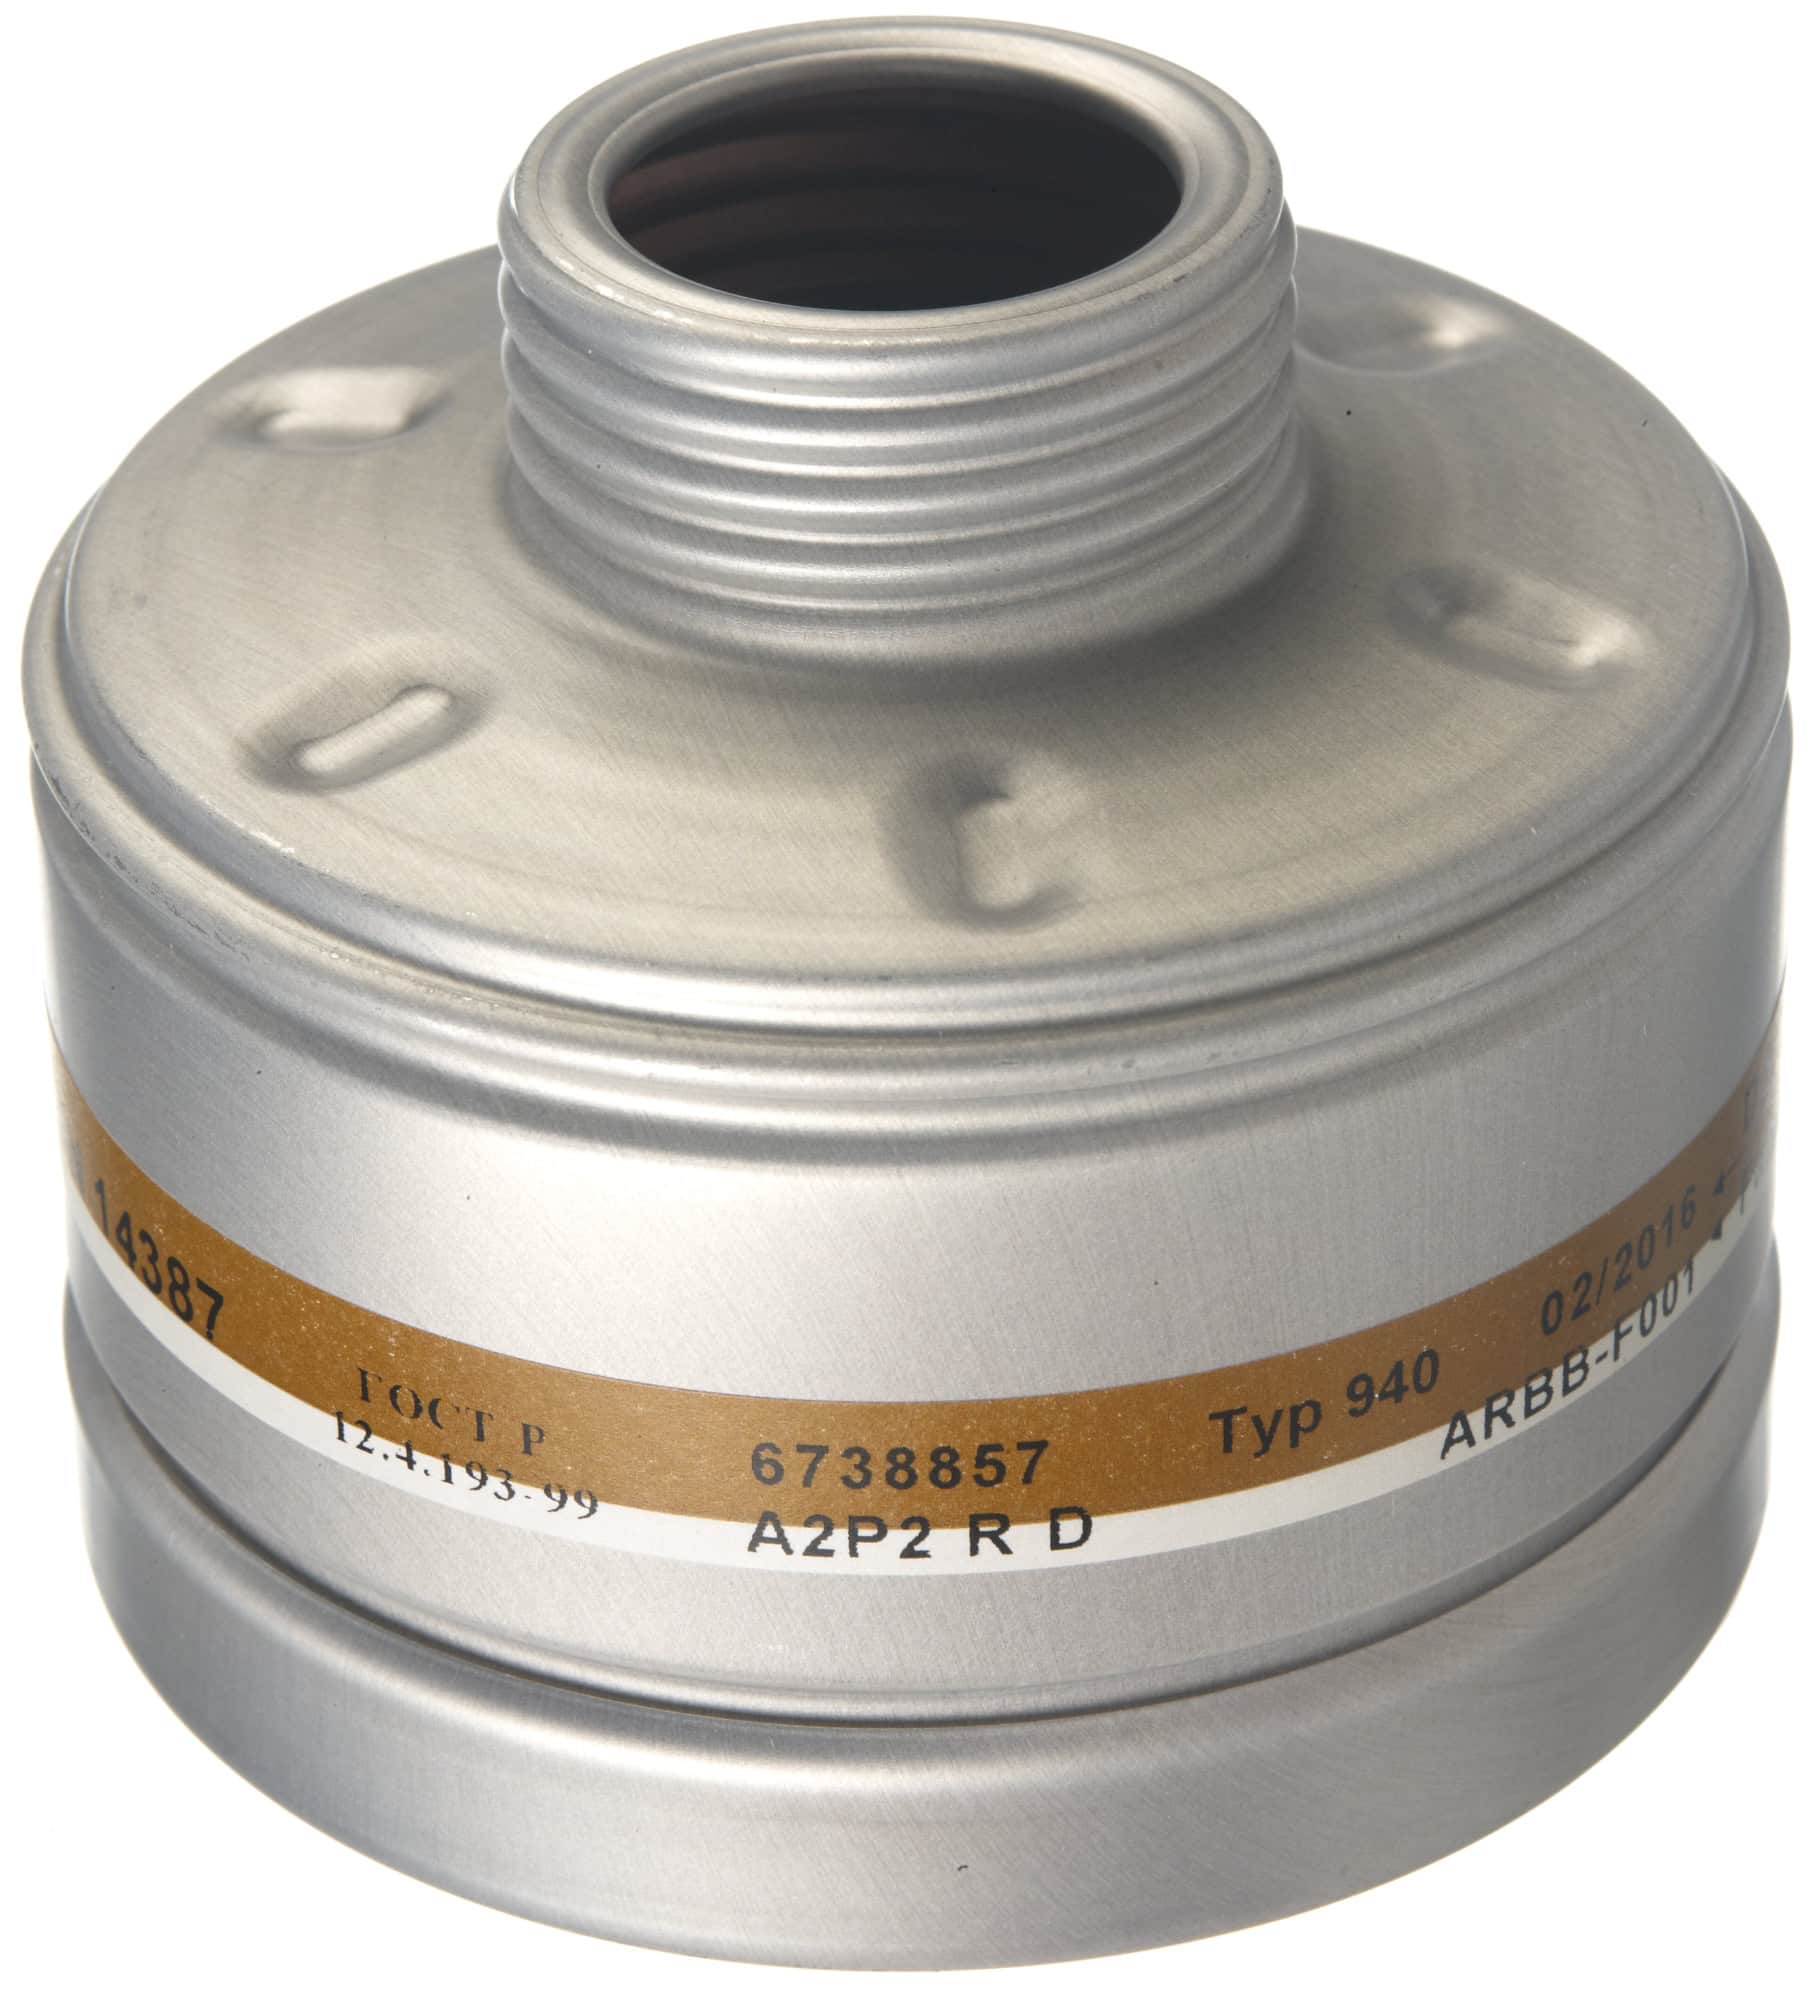 Dräger® X-plore® RD40 Kombi Filter 940, 6738857, A2 P2 R D, 40 mm Rundfilteranschluss [NATO Standard], Kombinationsfilter gegen organische Gase & Dämpfe + Partikel